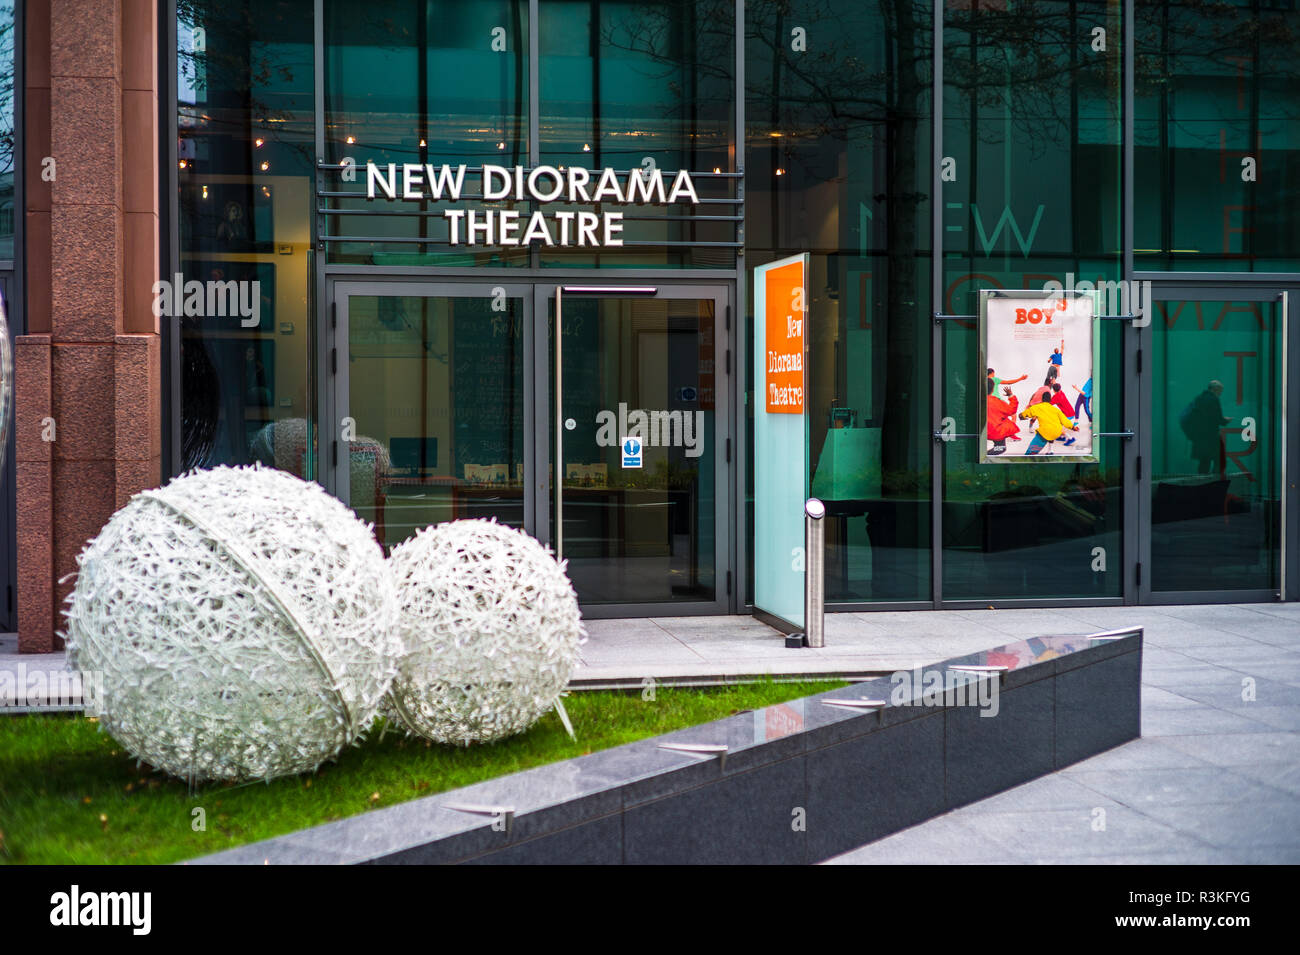 New Diorama Theatre un siège vingt-théâtre près de Regent's Park au centre de Londres, ouvert en 2010 Banque D'Images